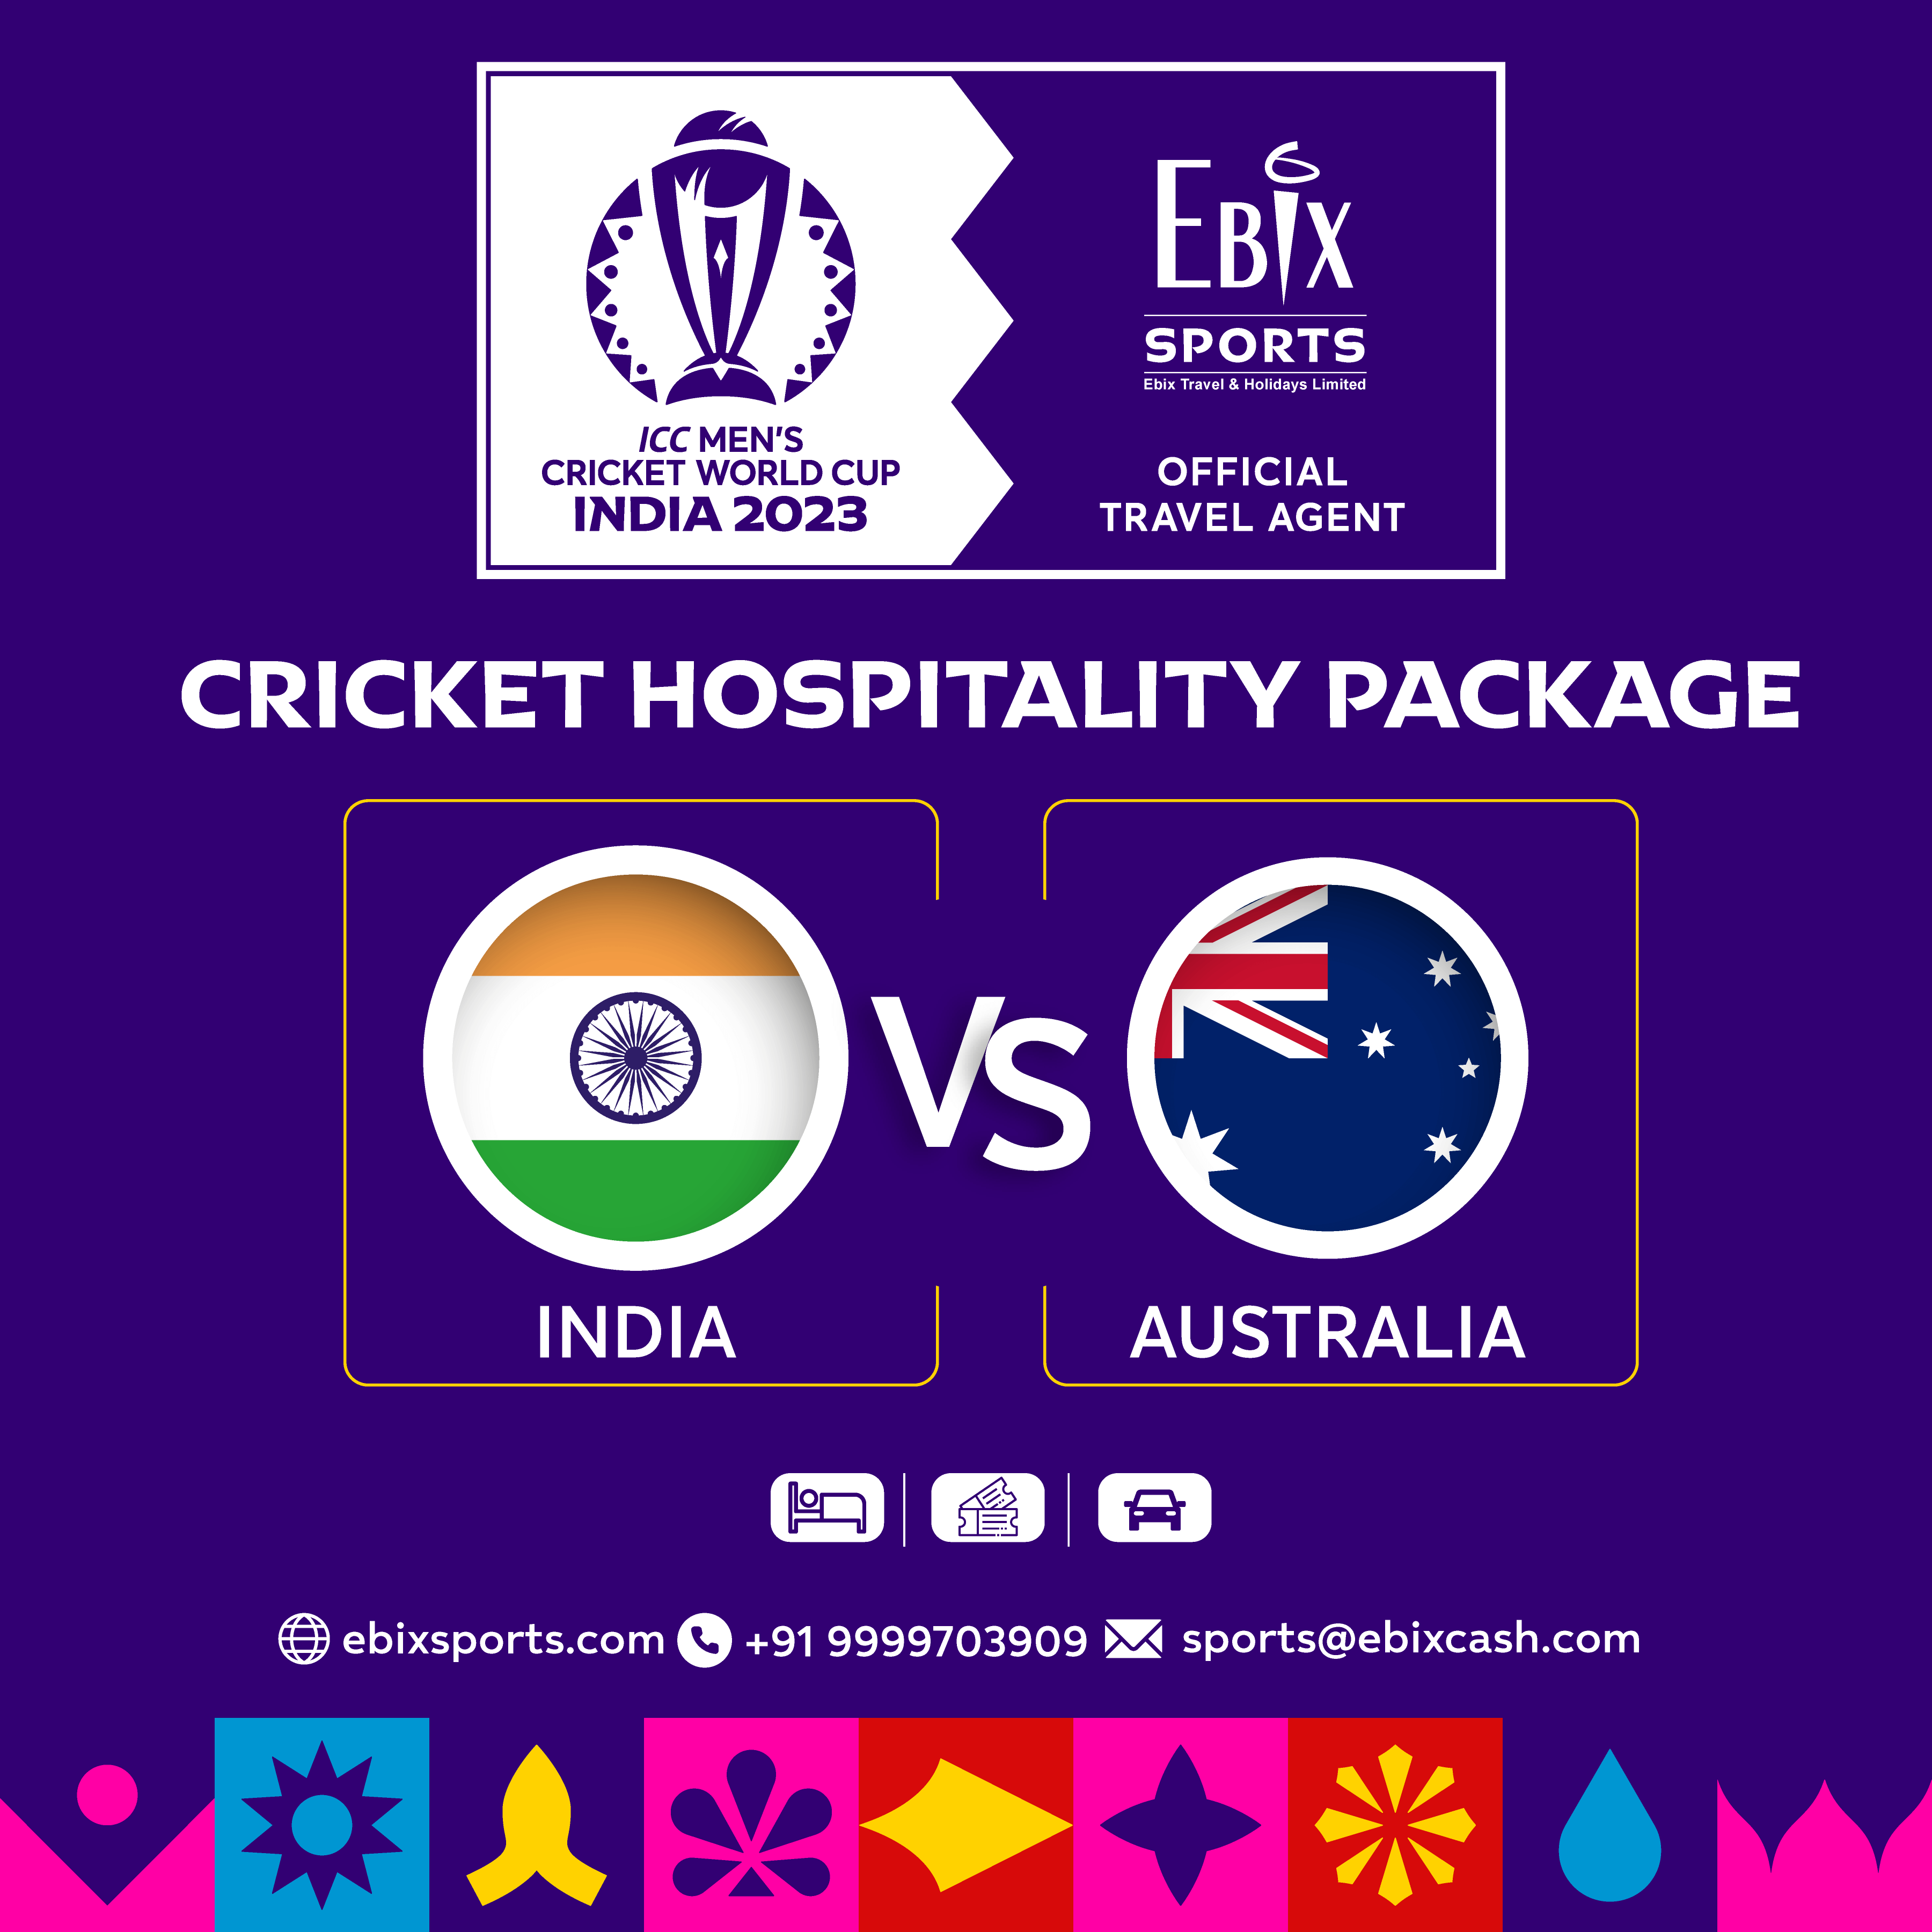 India v/s Australia